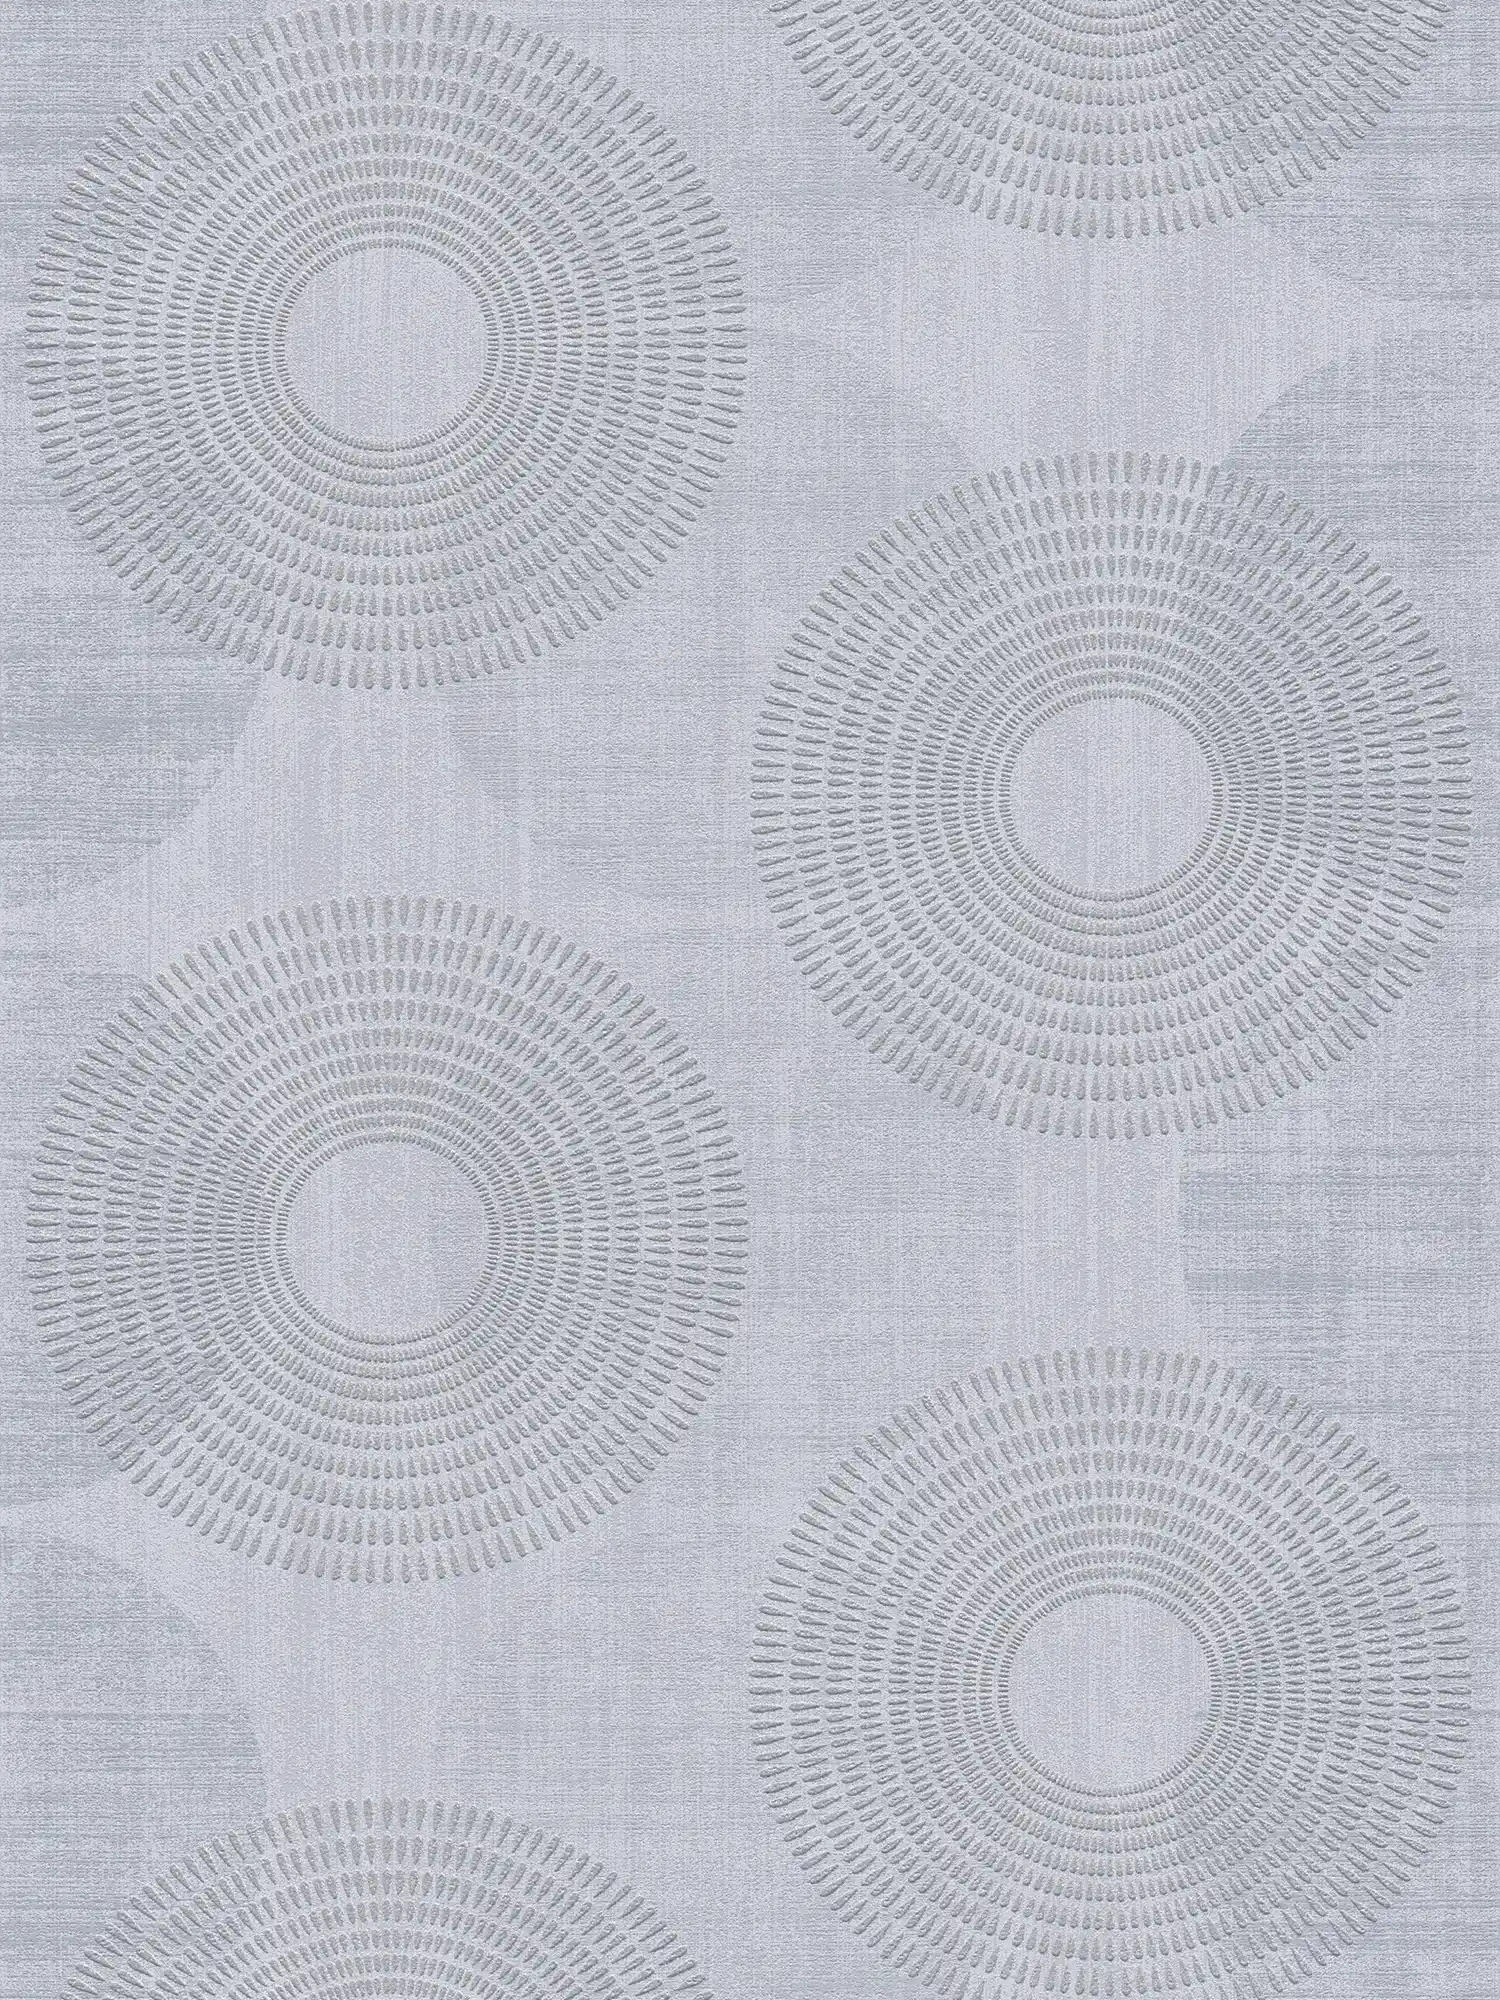 Modern vliesbehang abstract cirkelpatroon - grijs
